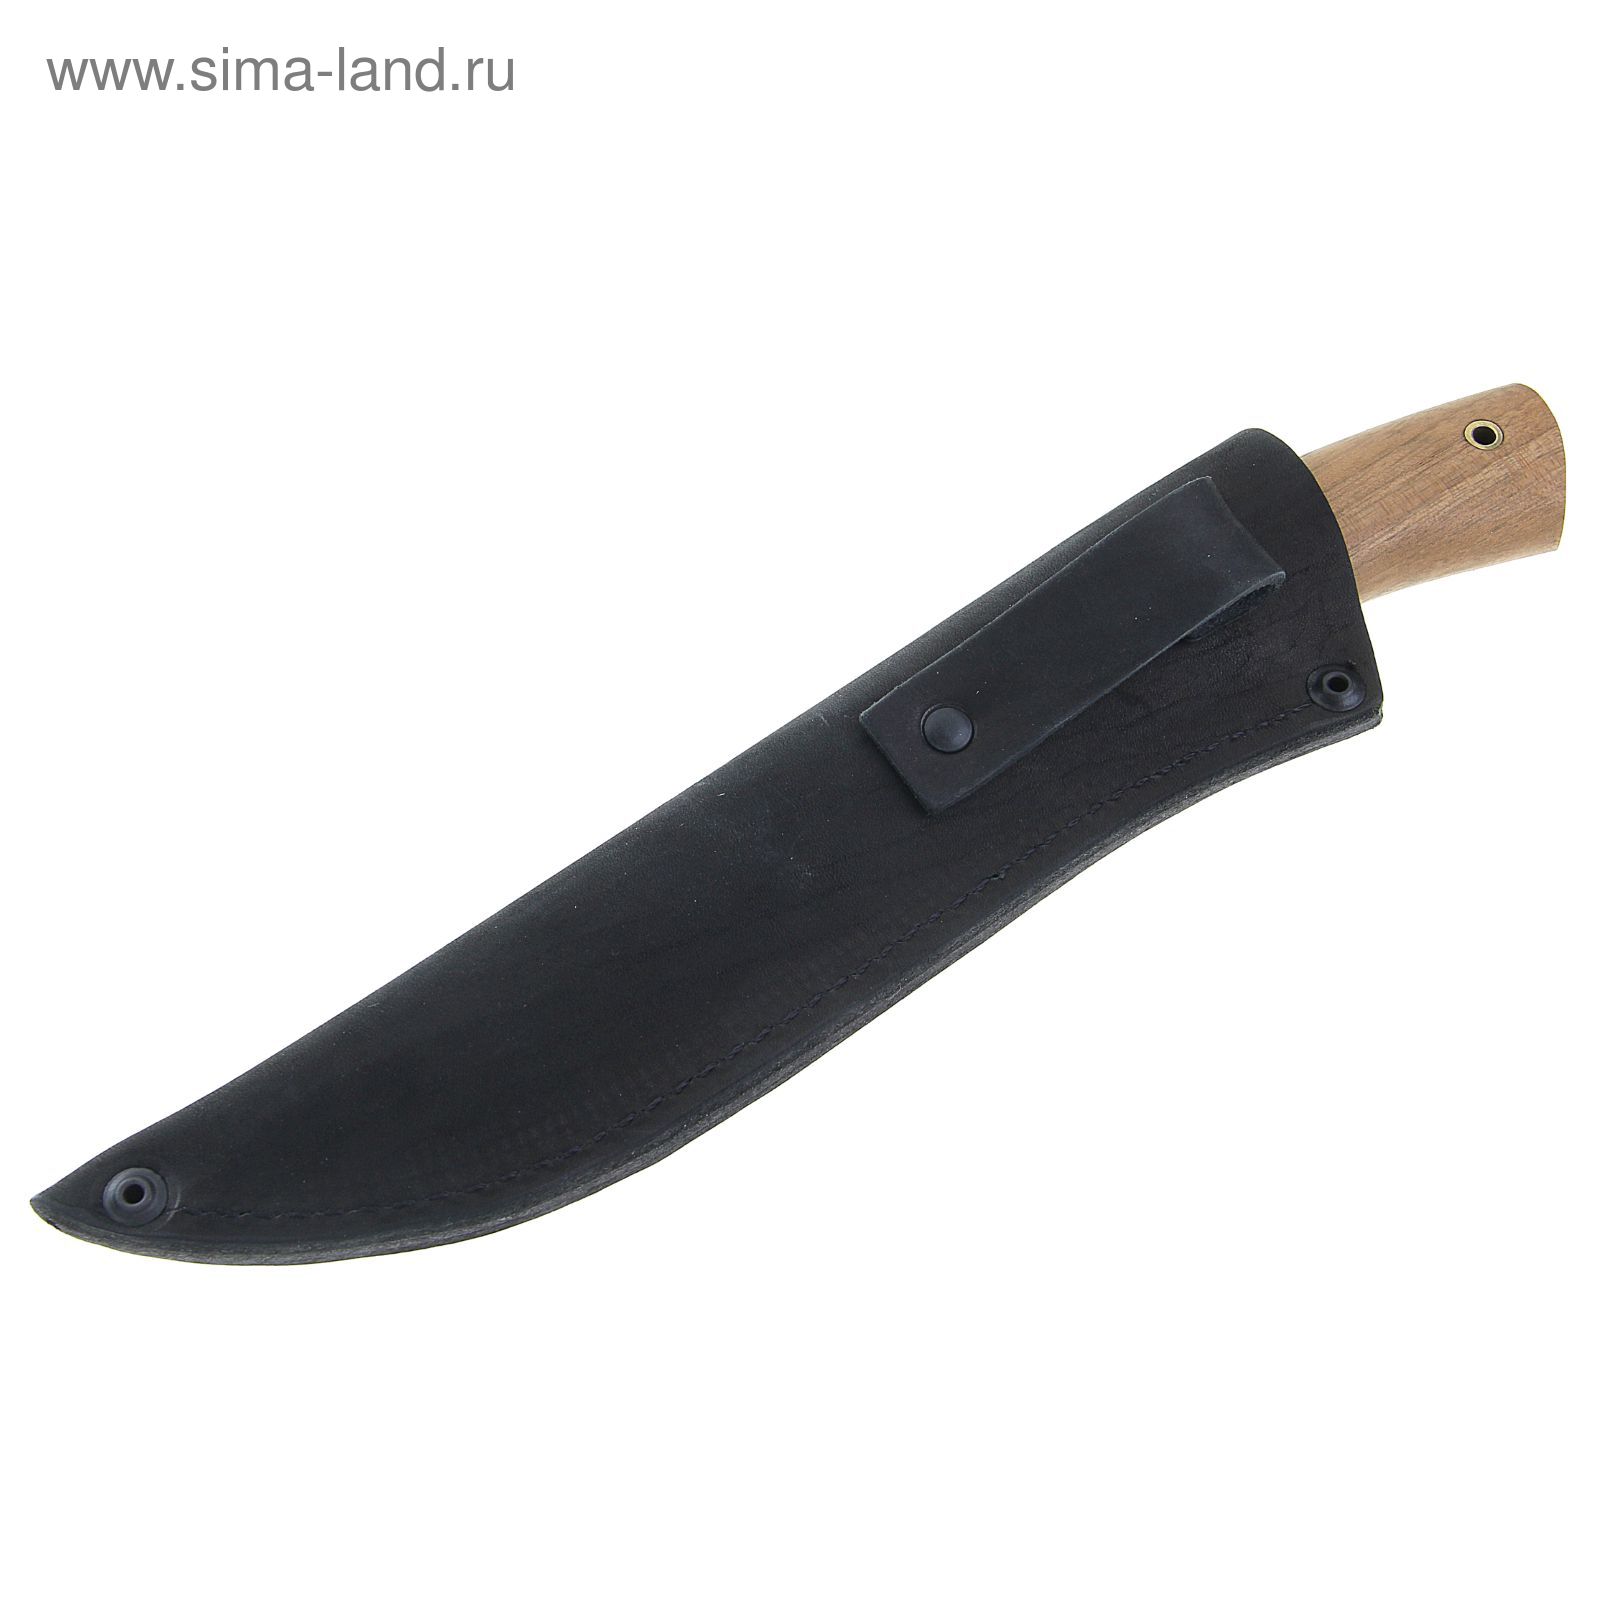 Нож нескладной "Смерч" СА-2, г.Павлово, сталь 65Х13, рукоять-орех